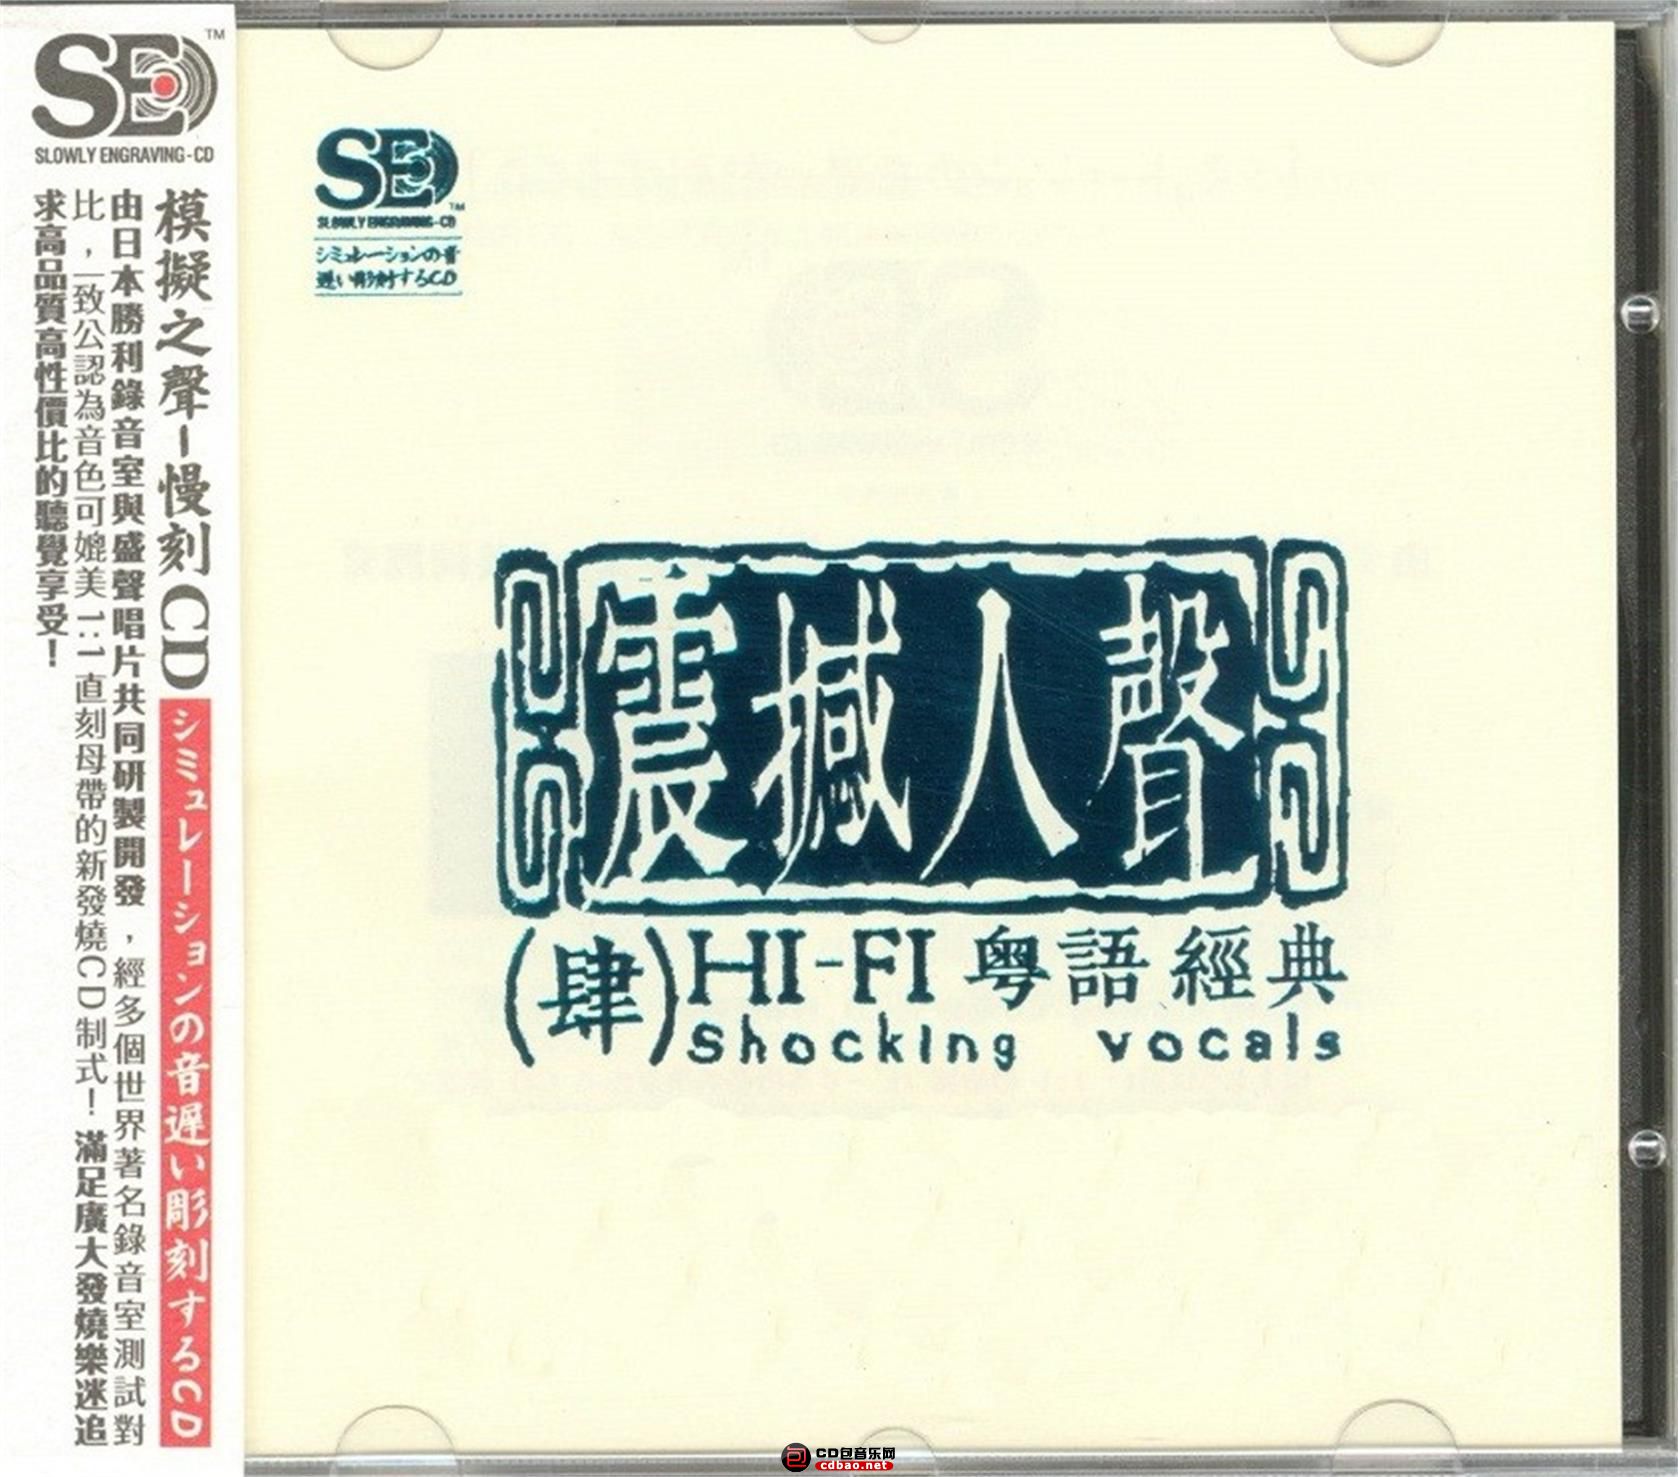 震撼人声4 HI-FI粤语经典CD.jpg